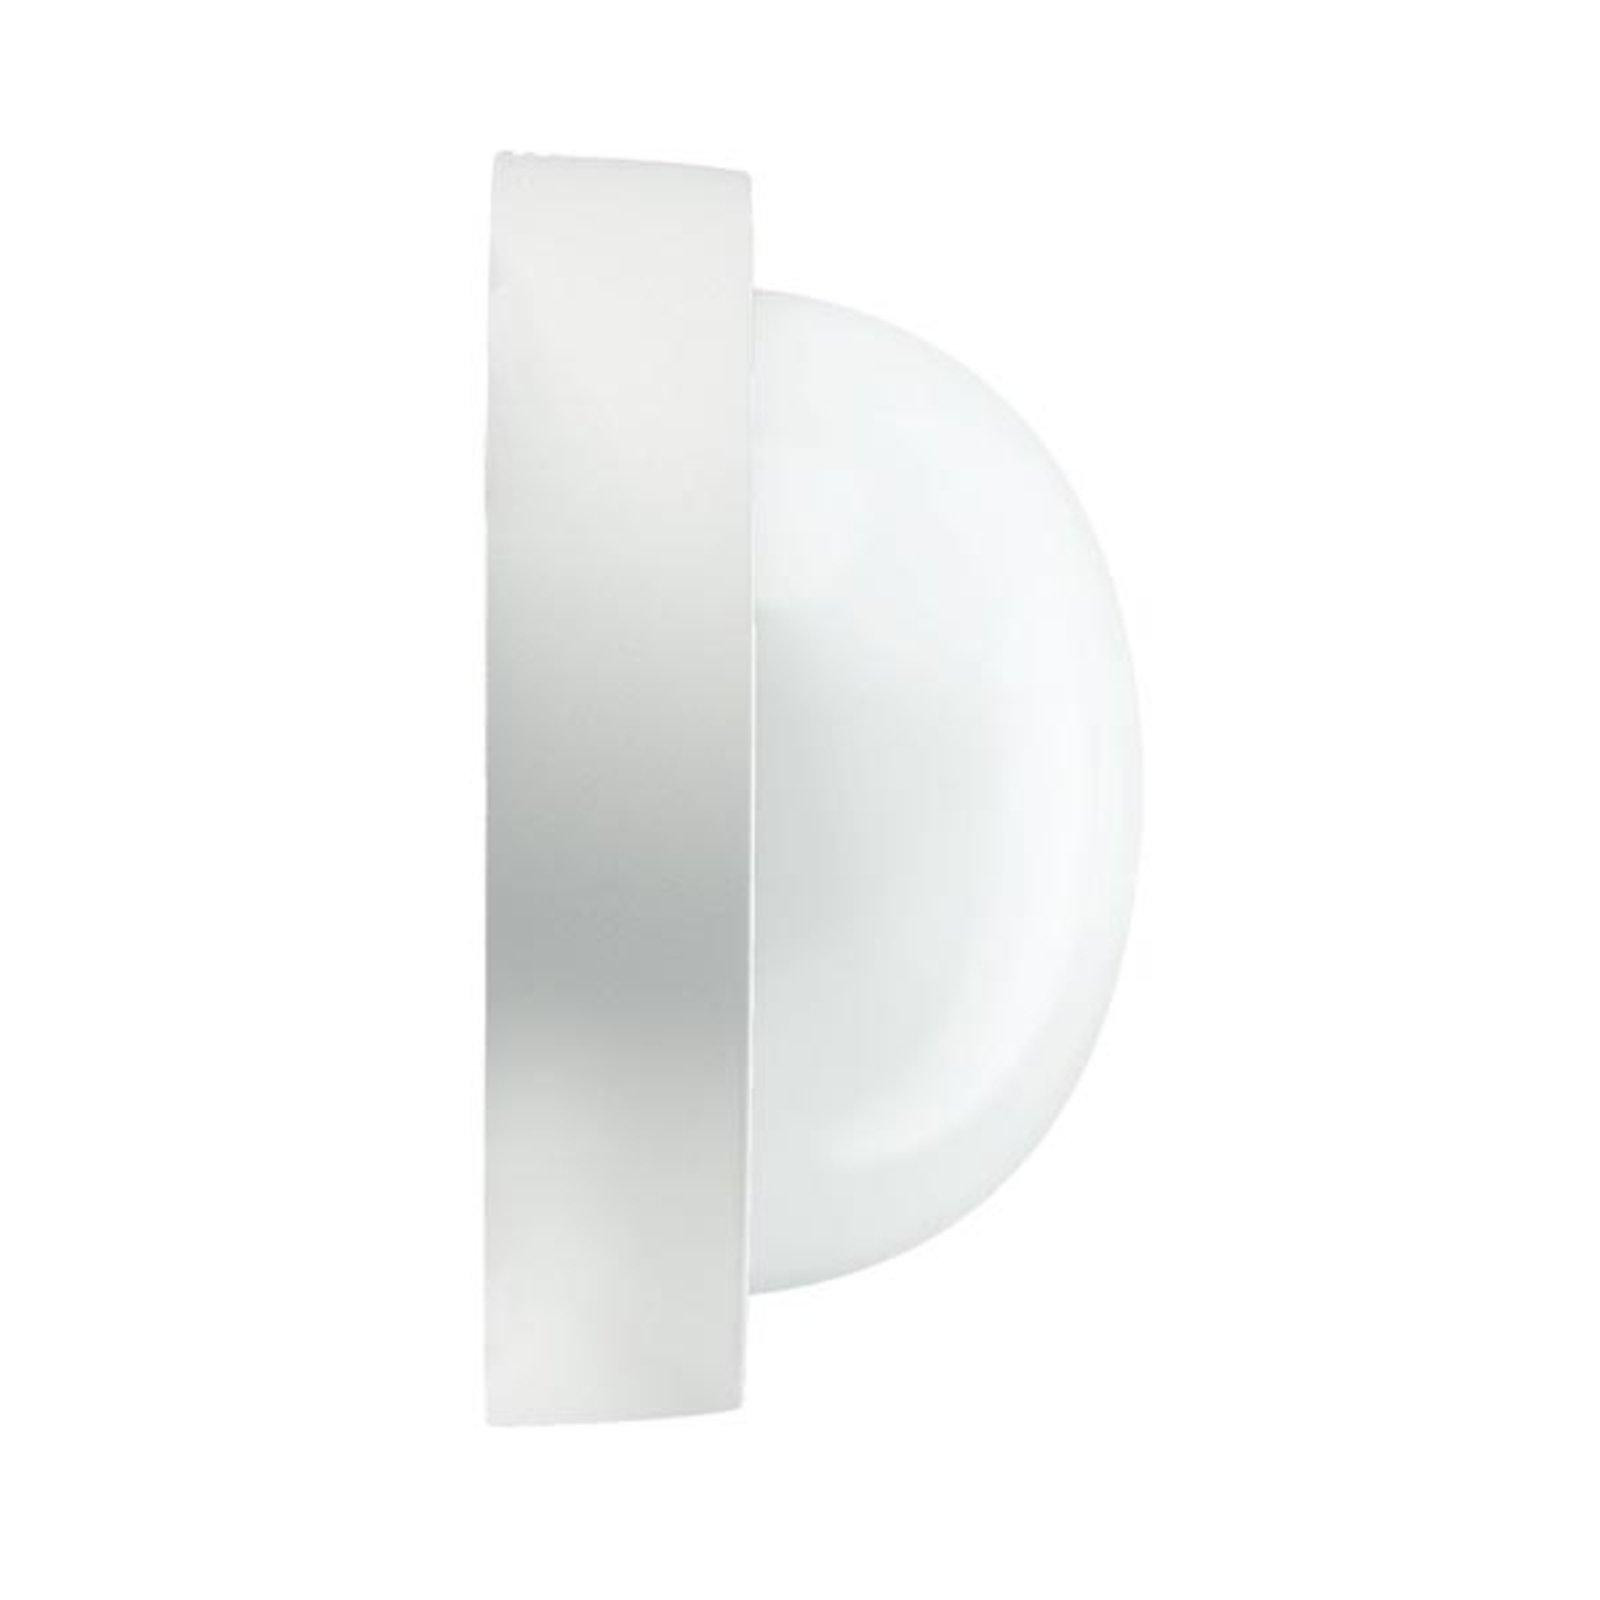 Lampa ścienna lub sufitowa zewnętrzna EKO 21 biała